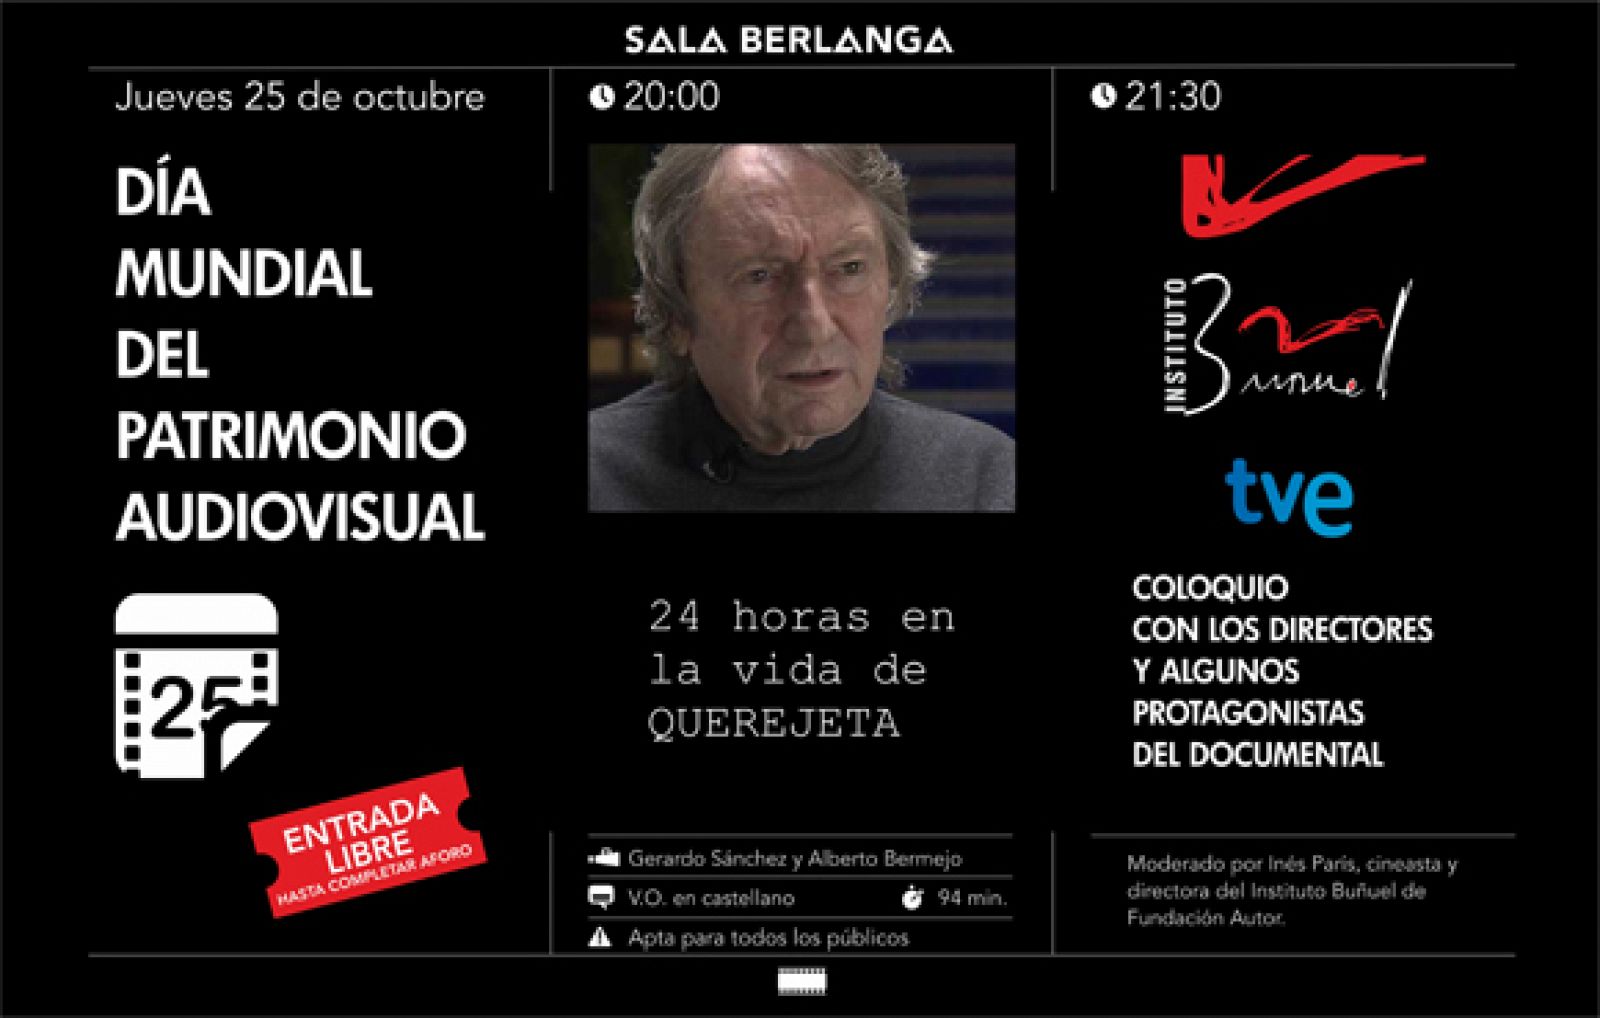 Cartel del Día del Patrimonio Audivisual organizado por el Instituto Buñuel.